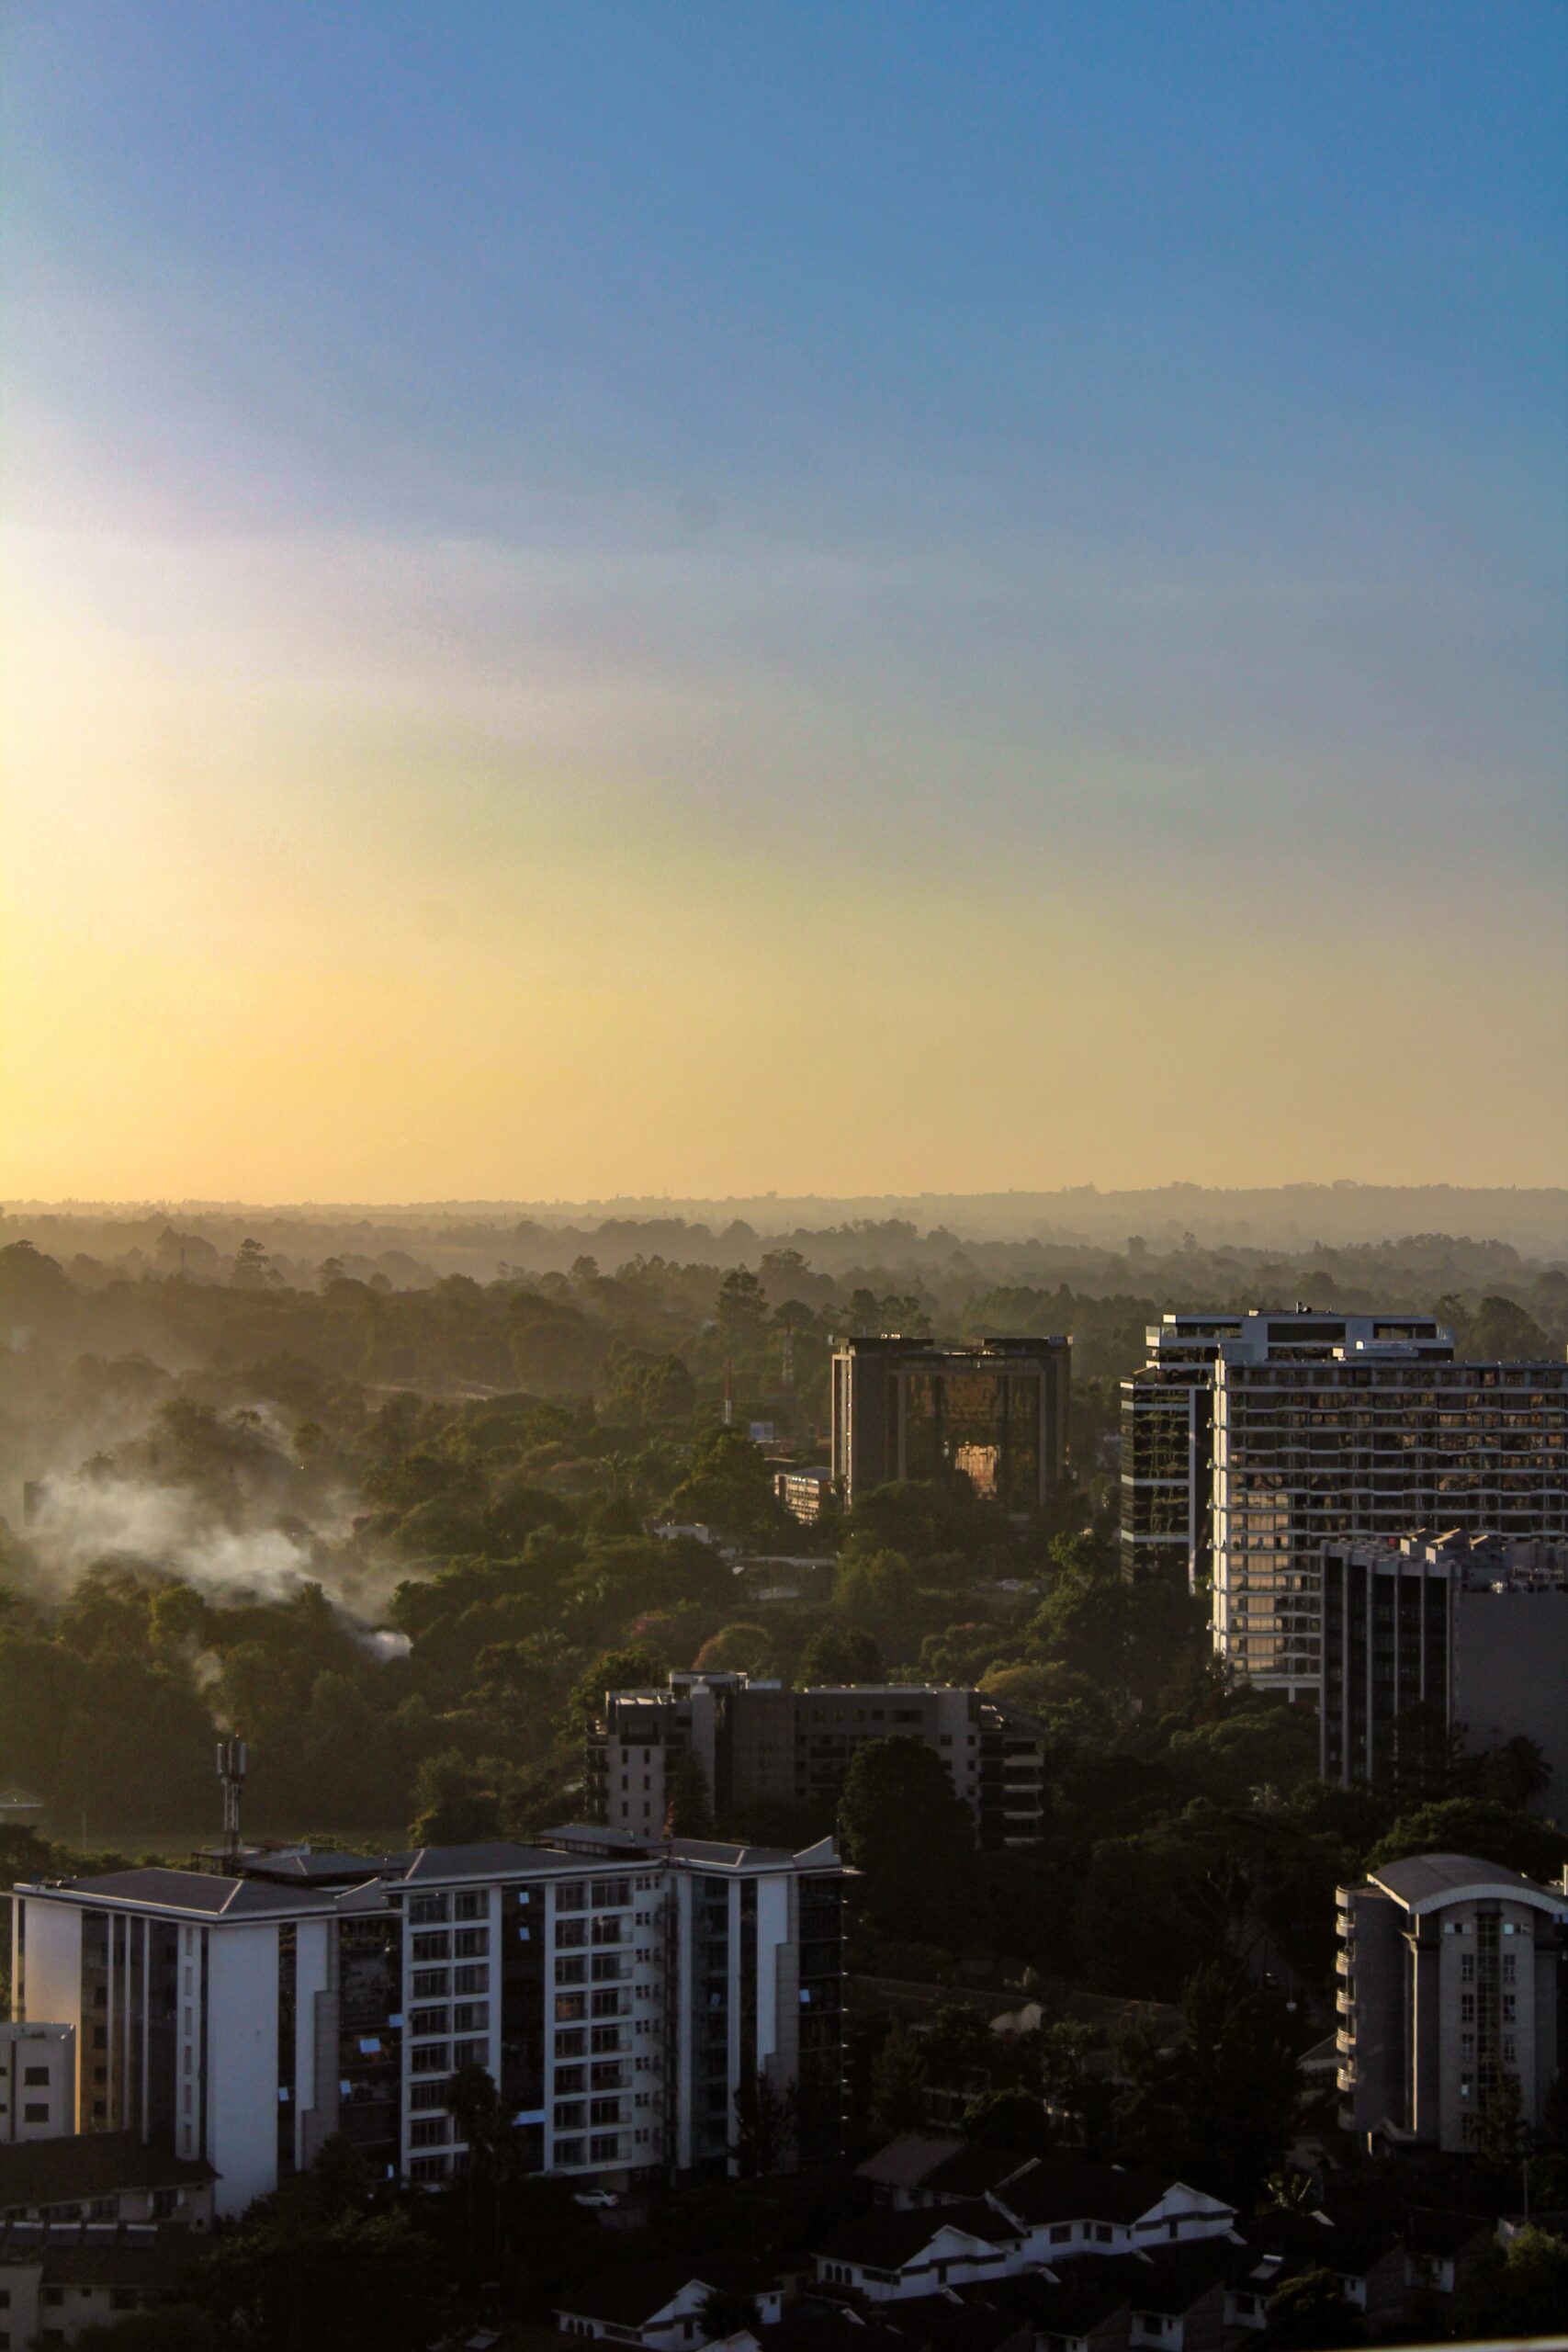 View of city buildings in Westlands, Nairobi, Kenya (Credit: Michael Muli)